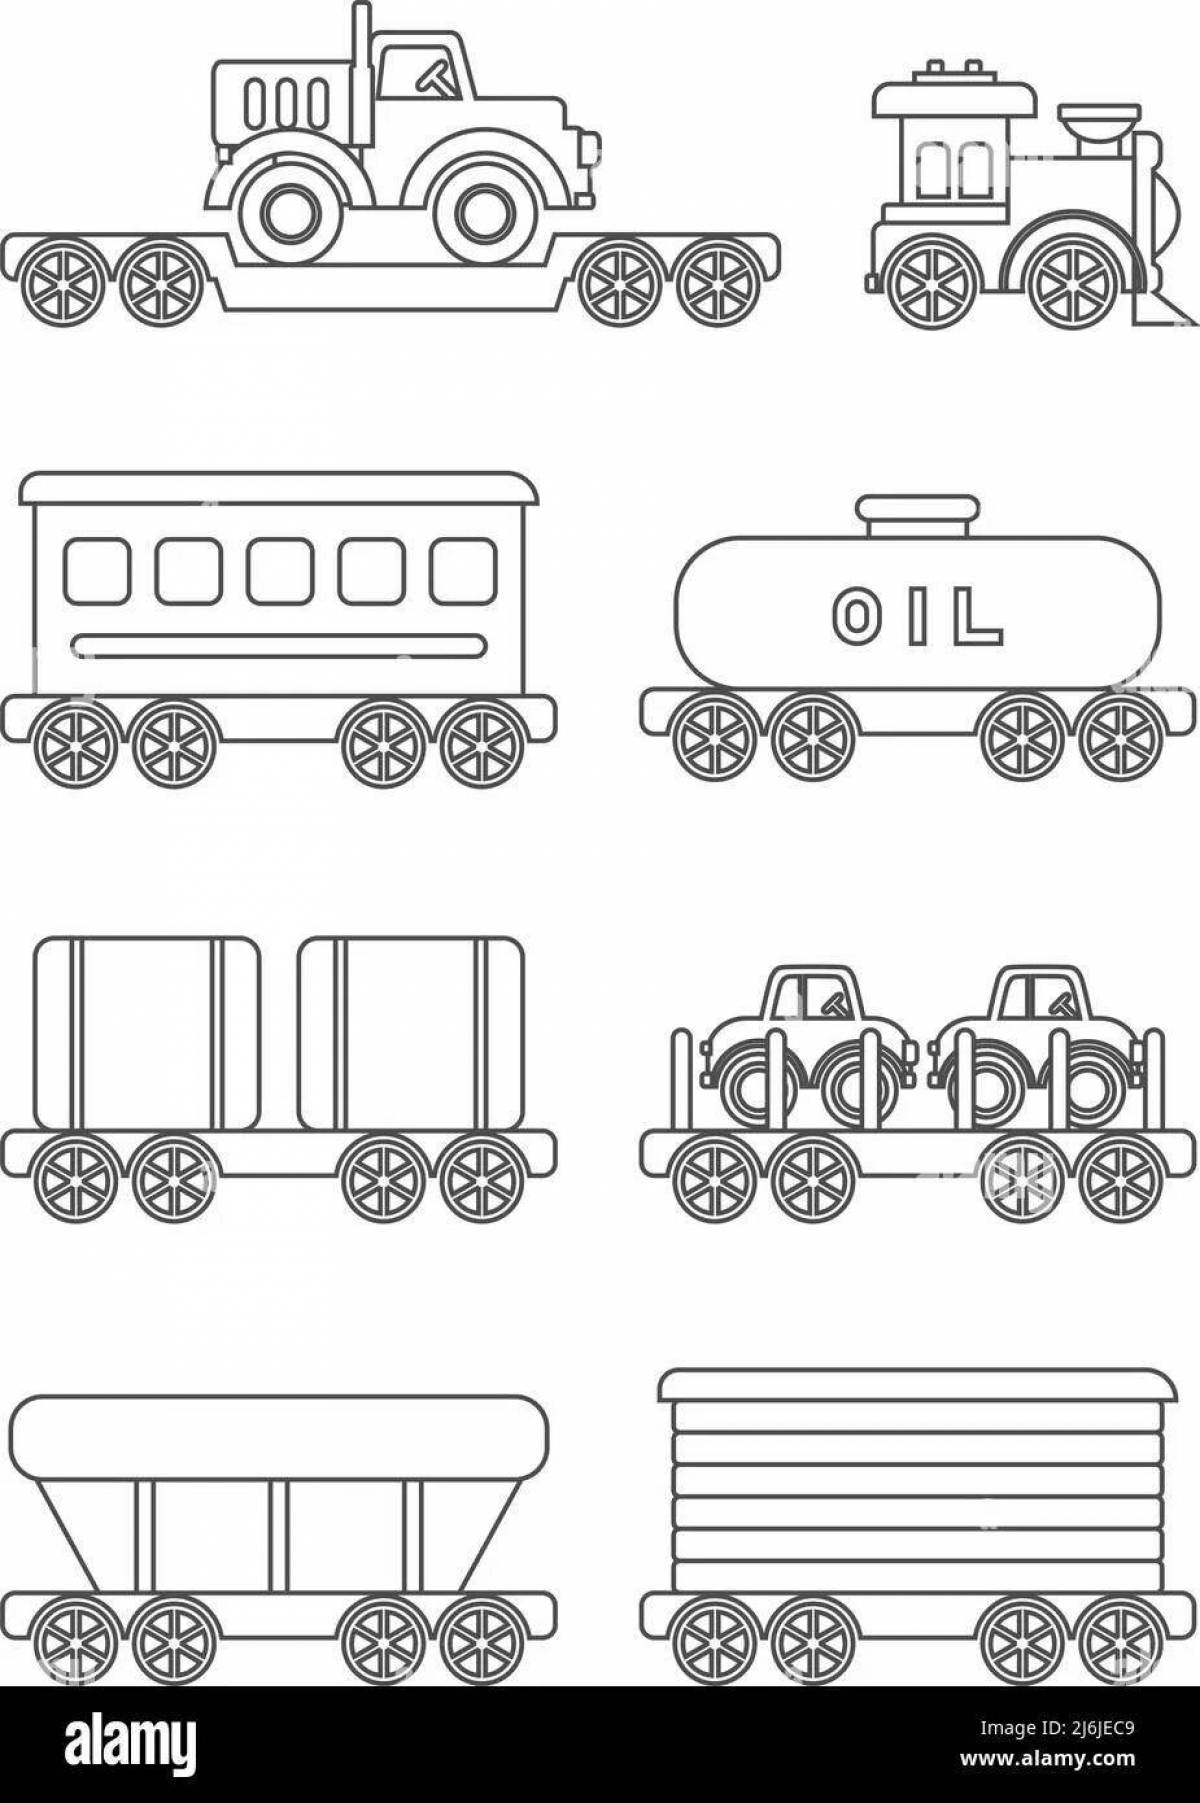 Впечатляющая страница раскраски грузового поезда для детей